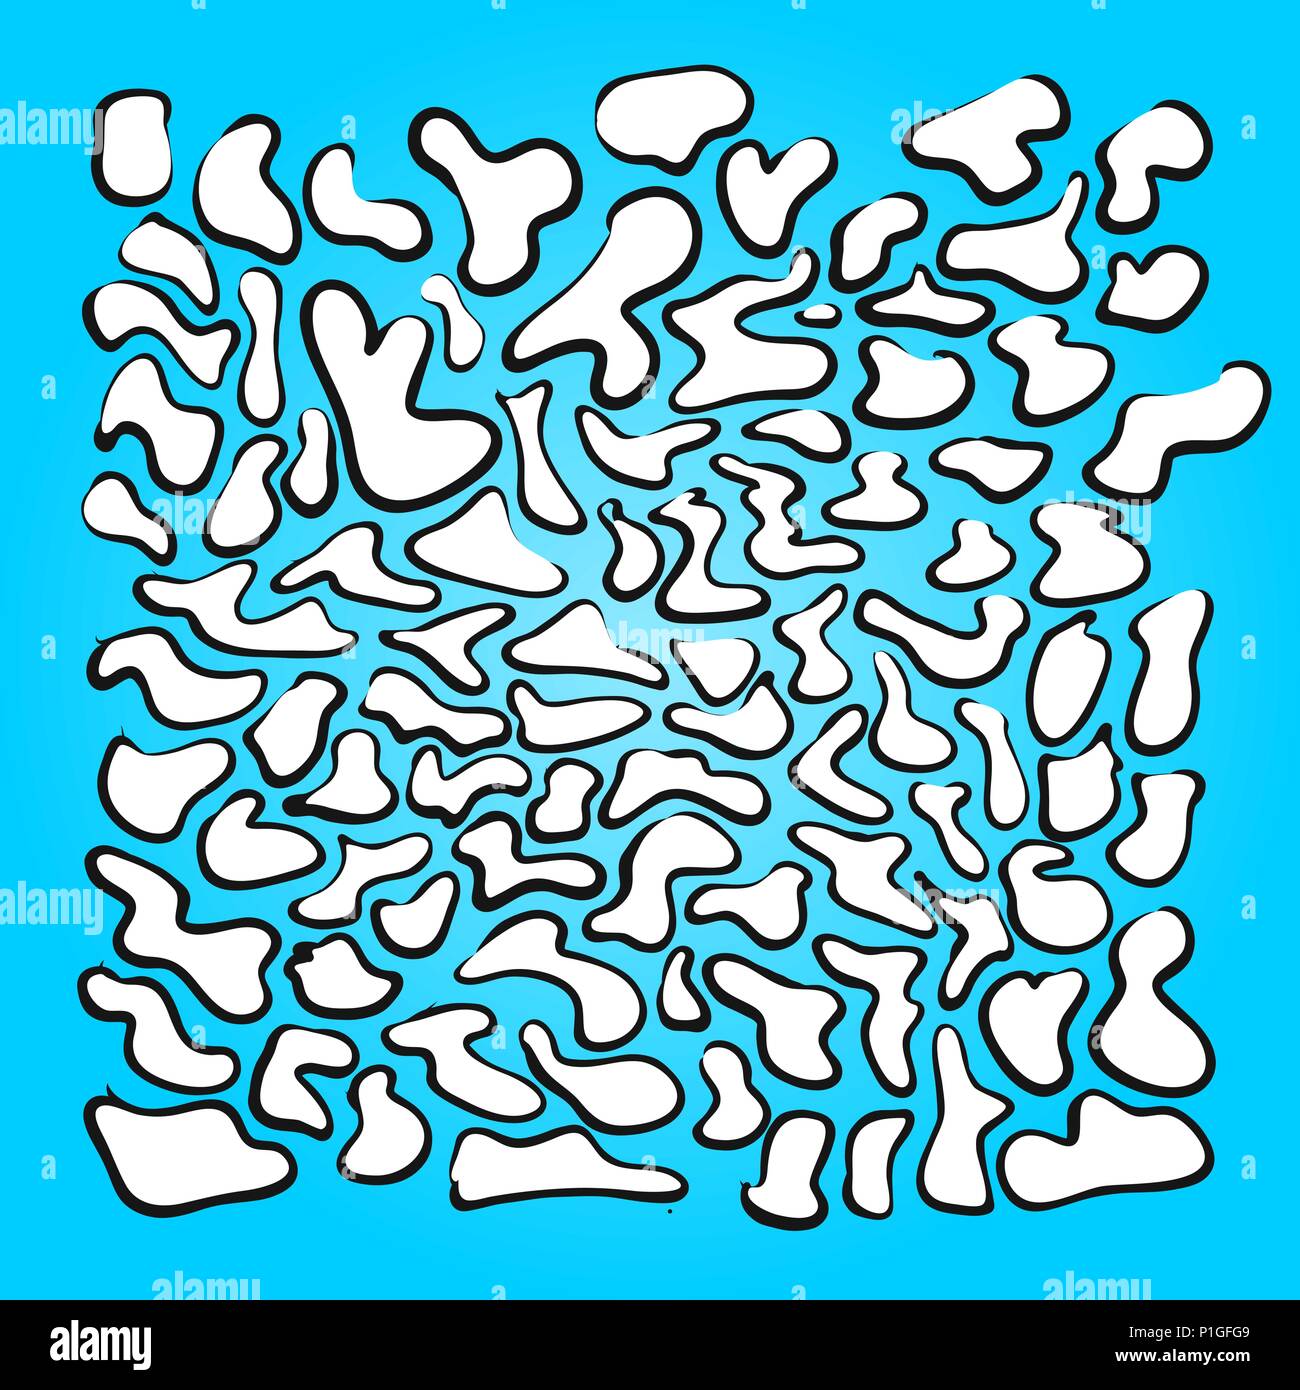 Von Hand gezeichnet Formen Tapete Muster, Vector Illustration Stock Vektor